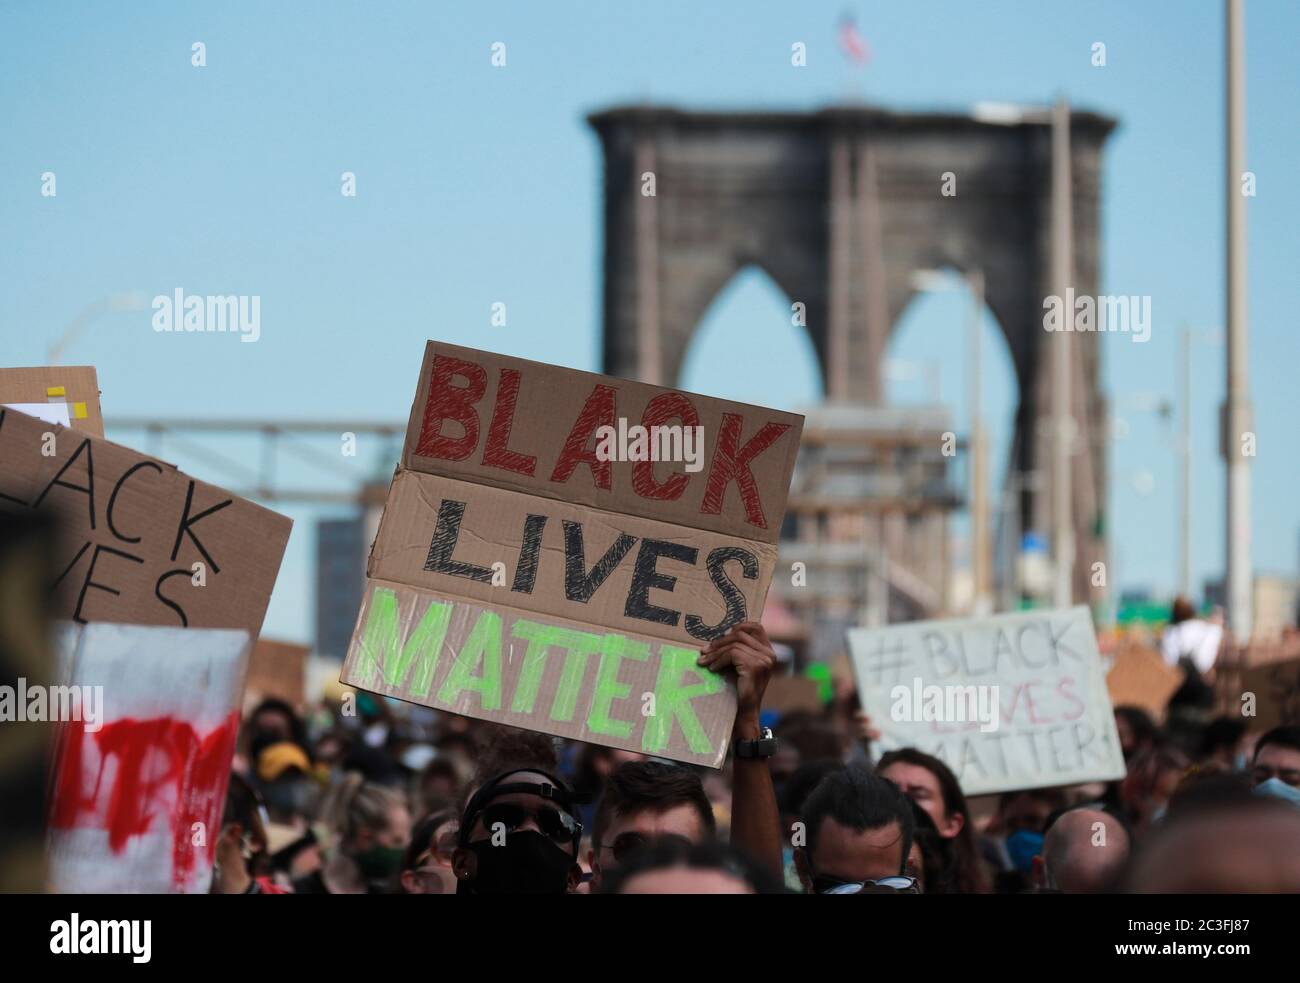 New York, Stati Uniti. 19 giugno 2020. I dimostranti attraversano il ponte di Brooklyn a New York, Stati Uniti, il 19 giugno 2020. Venerdì i newyorkesi hanno segnato il giorno del diciassettesimo giugno, il giorno in cui commemoravano l'emancipazione degli afroamericani schiavi, con marce e proteste mentre il paese sta vivendo un nuovo momento di recitazione dell'ingiustizia razziale. Credit: Wang Ying/Xinhua/Alamy Live News Foto Stock